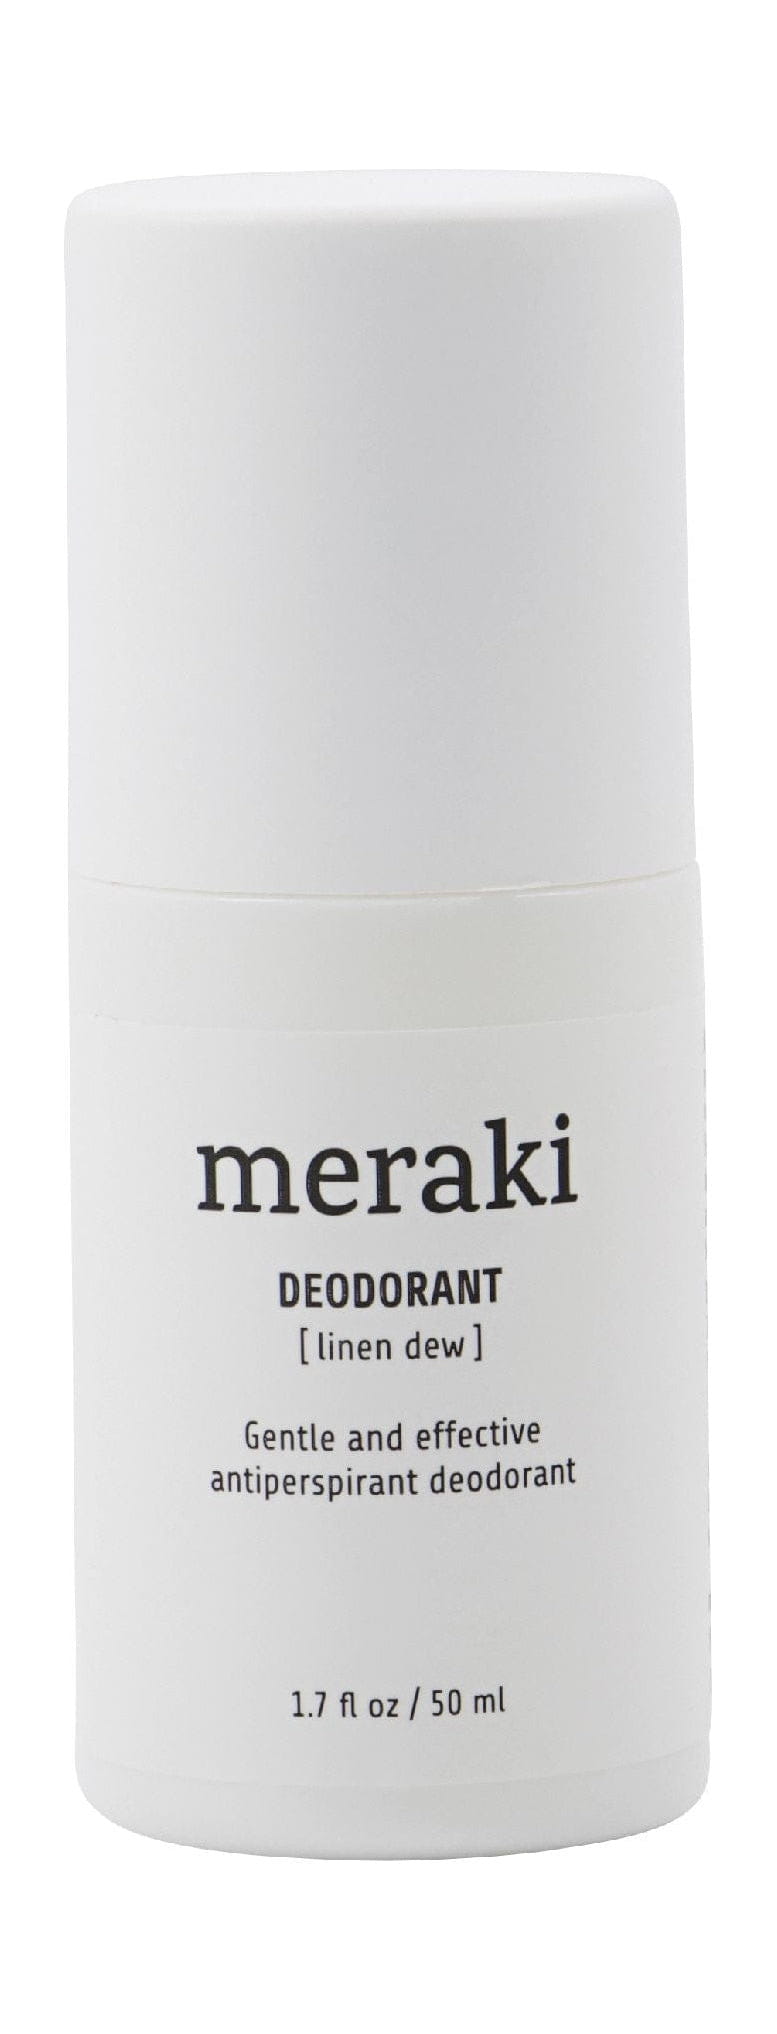 Meraki Deodorante 50 ml, lino Dew